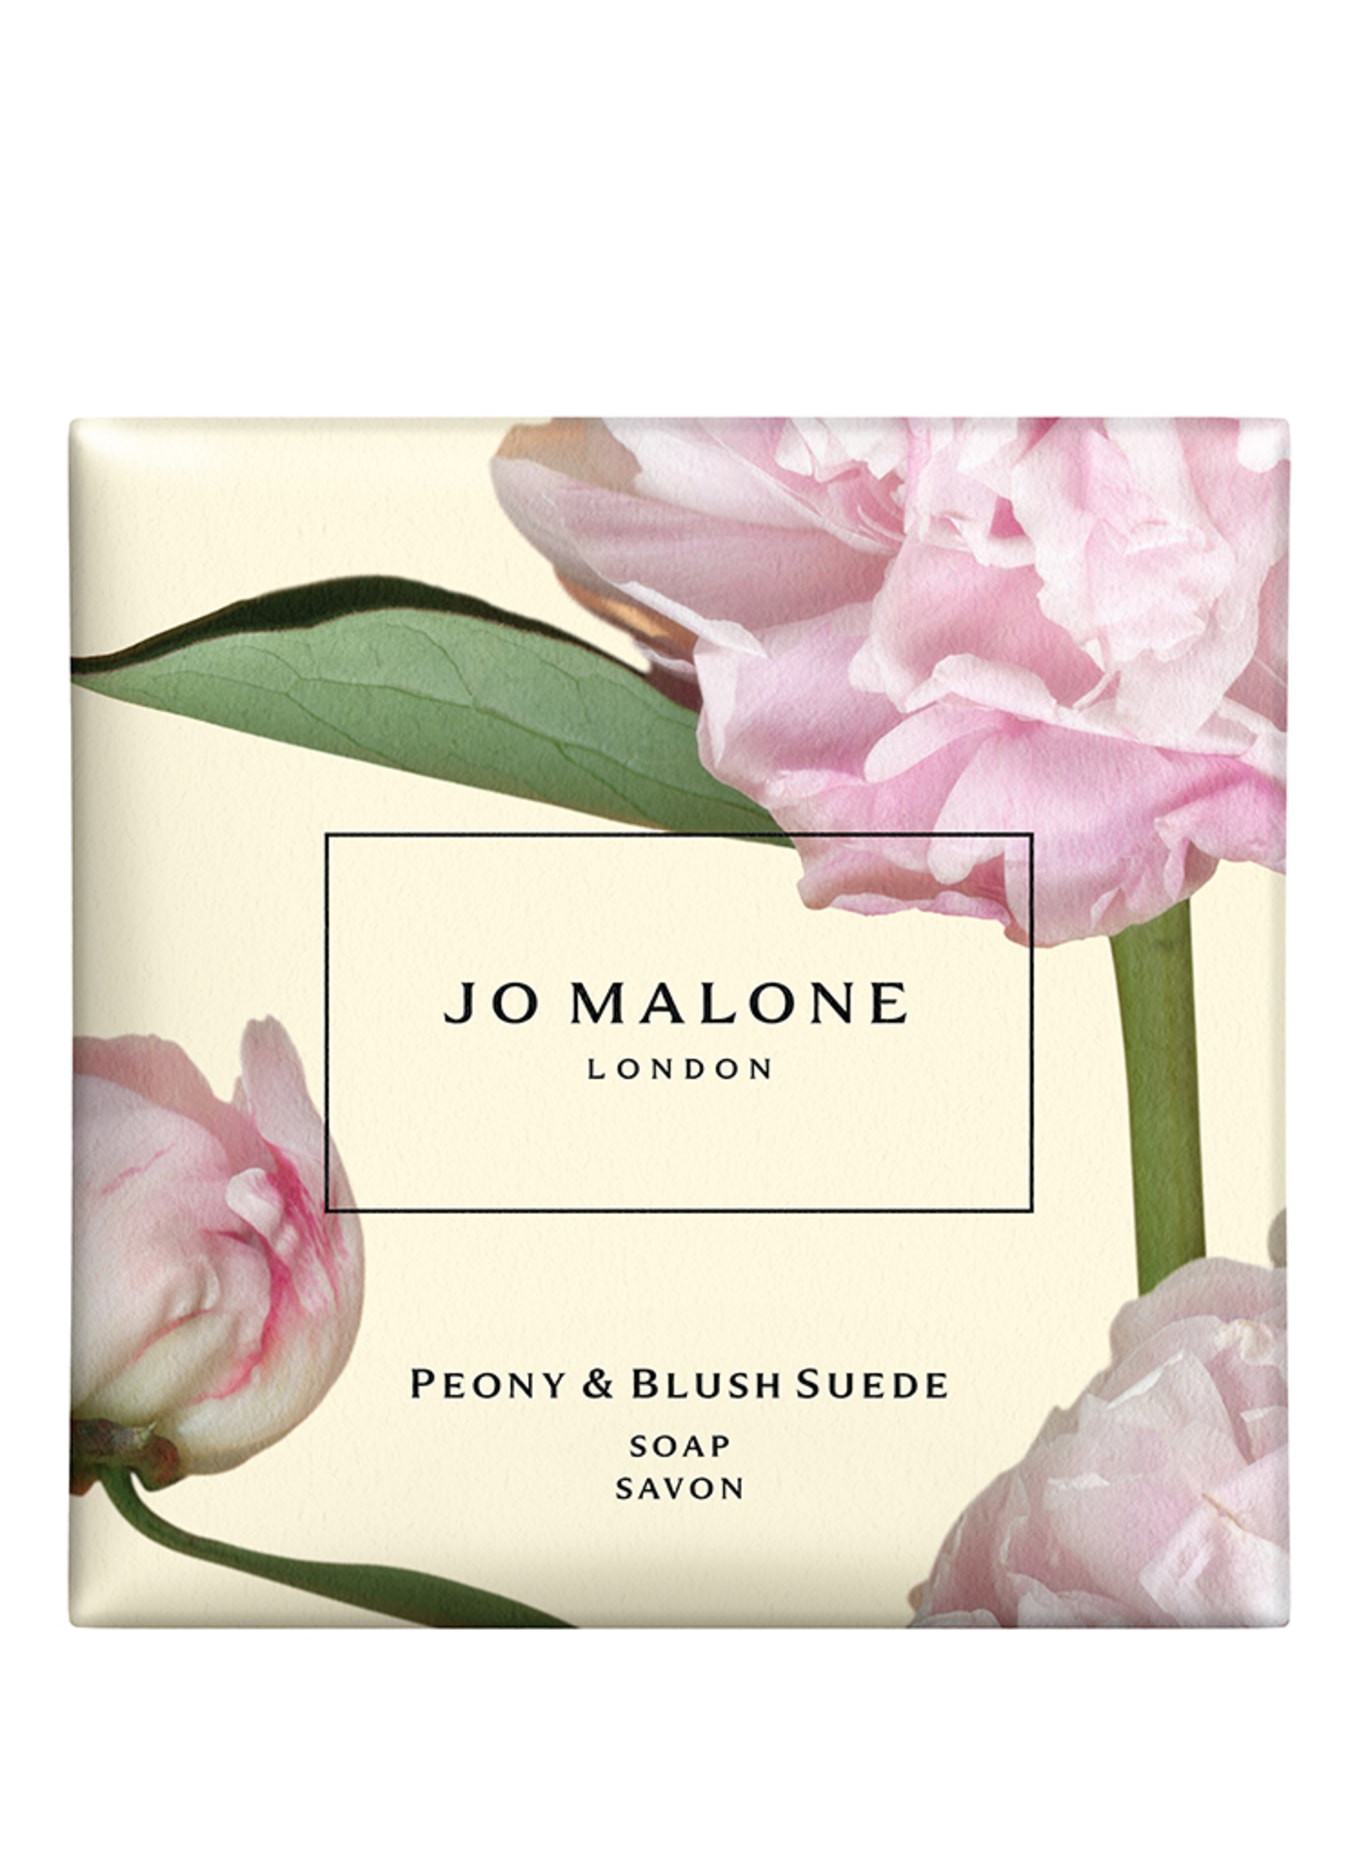 JO MALONE LONDON PEONY & BLUSH SUEDESOAP (Obrázek 1)